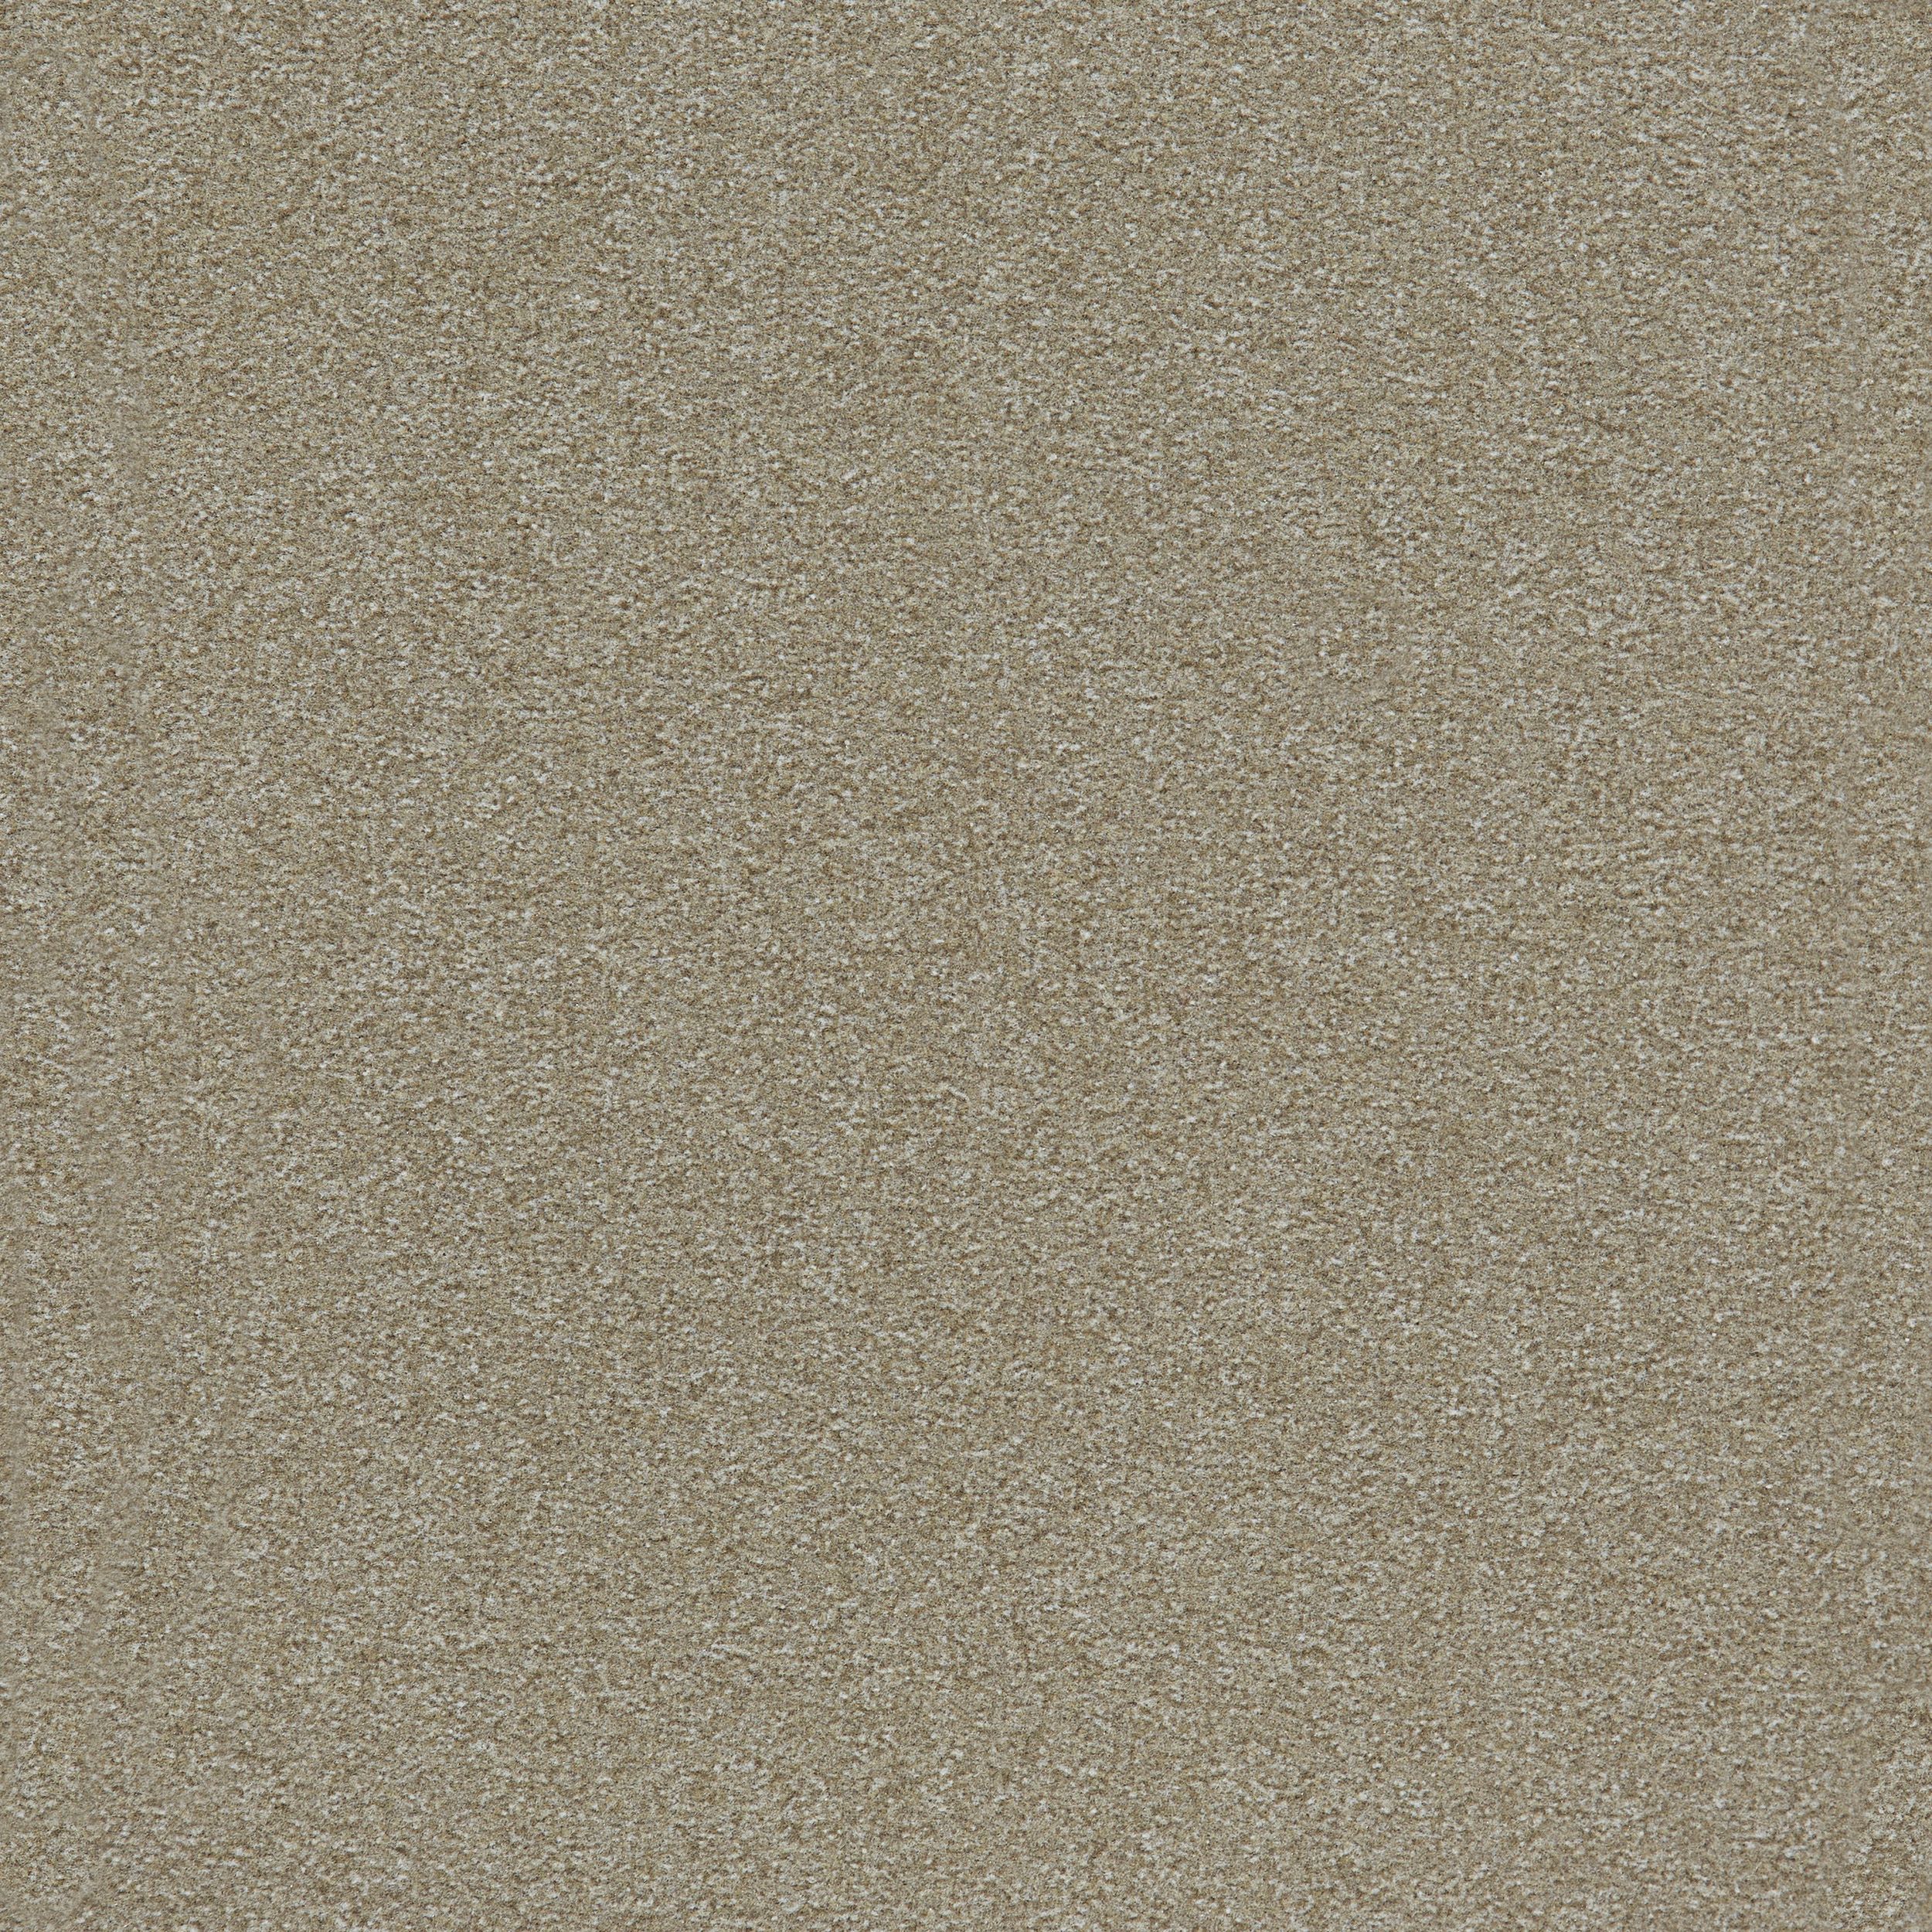 Heuga 725 Carpet Tile In Oyster Bildnummer 5